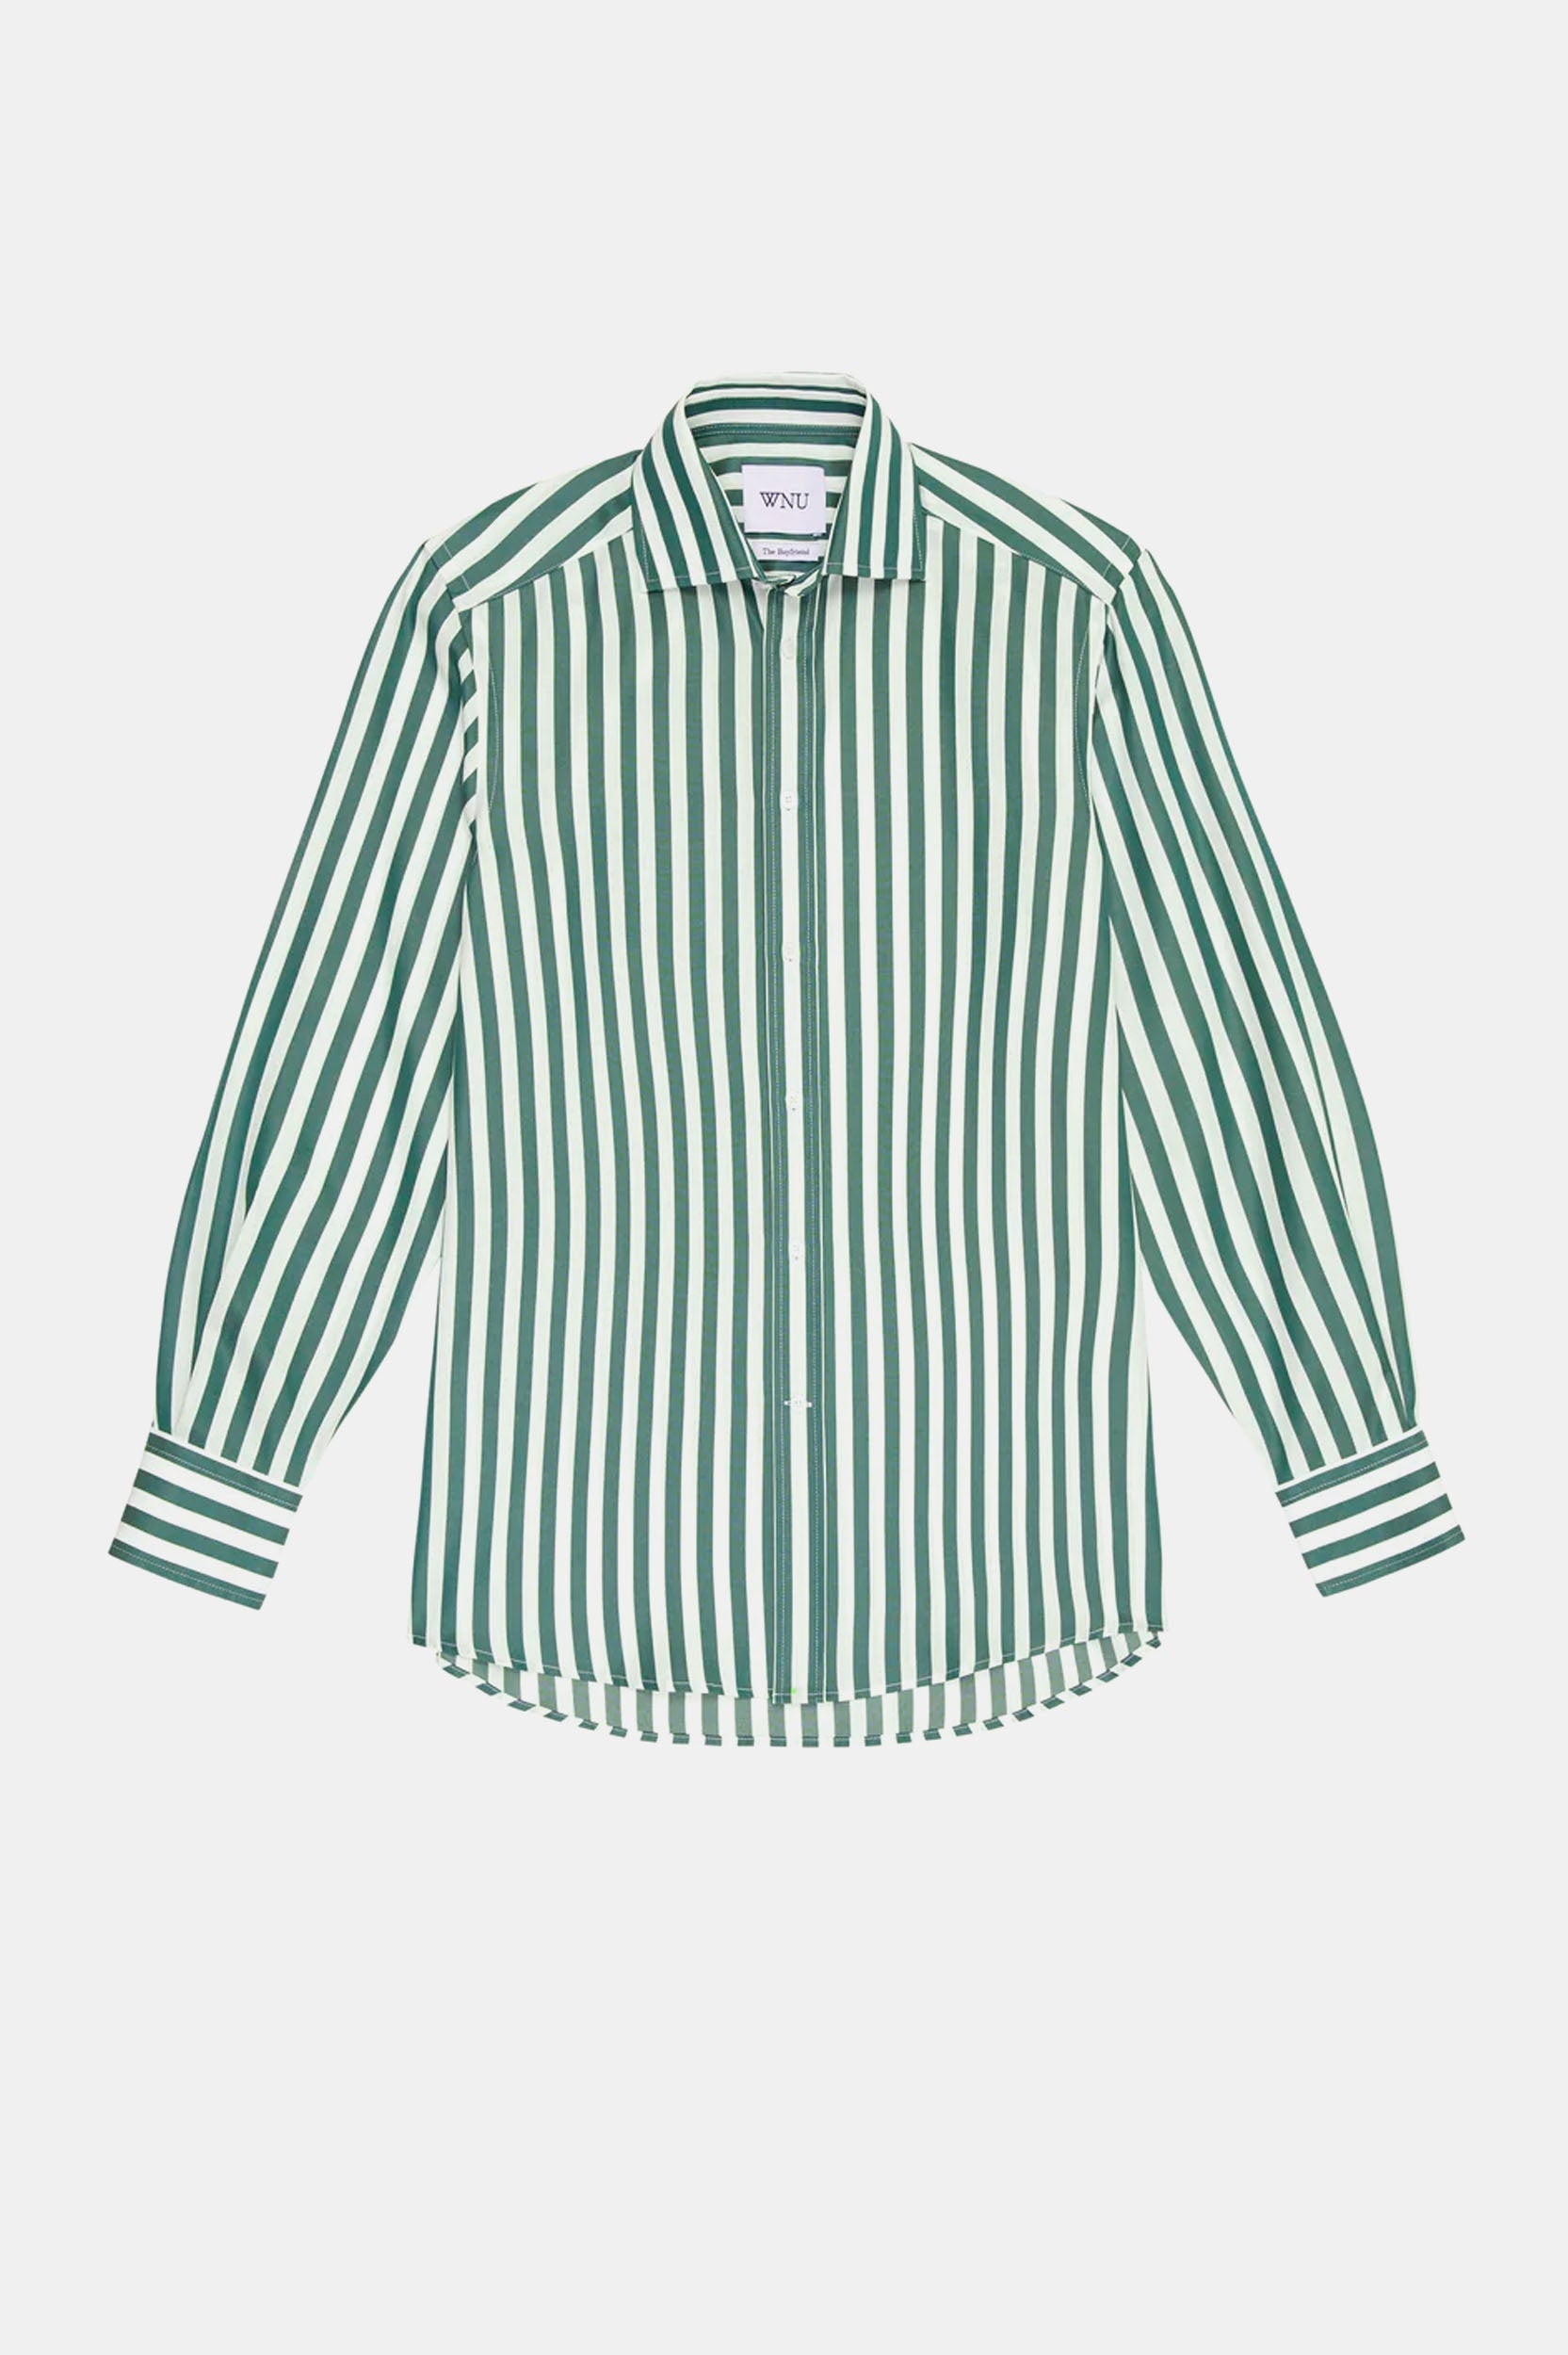 The Boyfriend Shirt in Forest Green Stripe